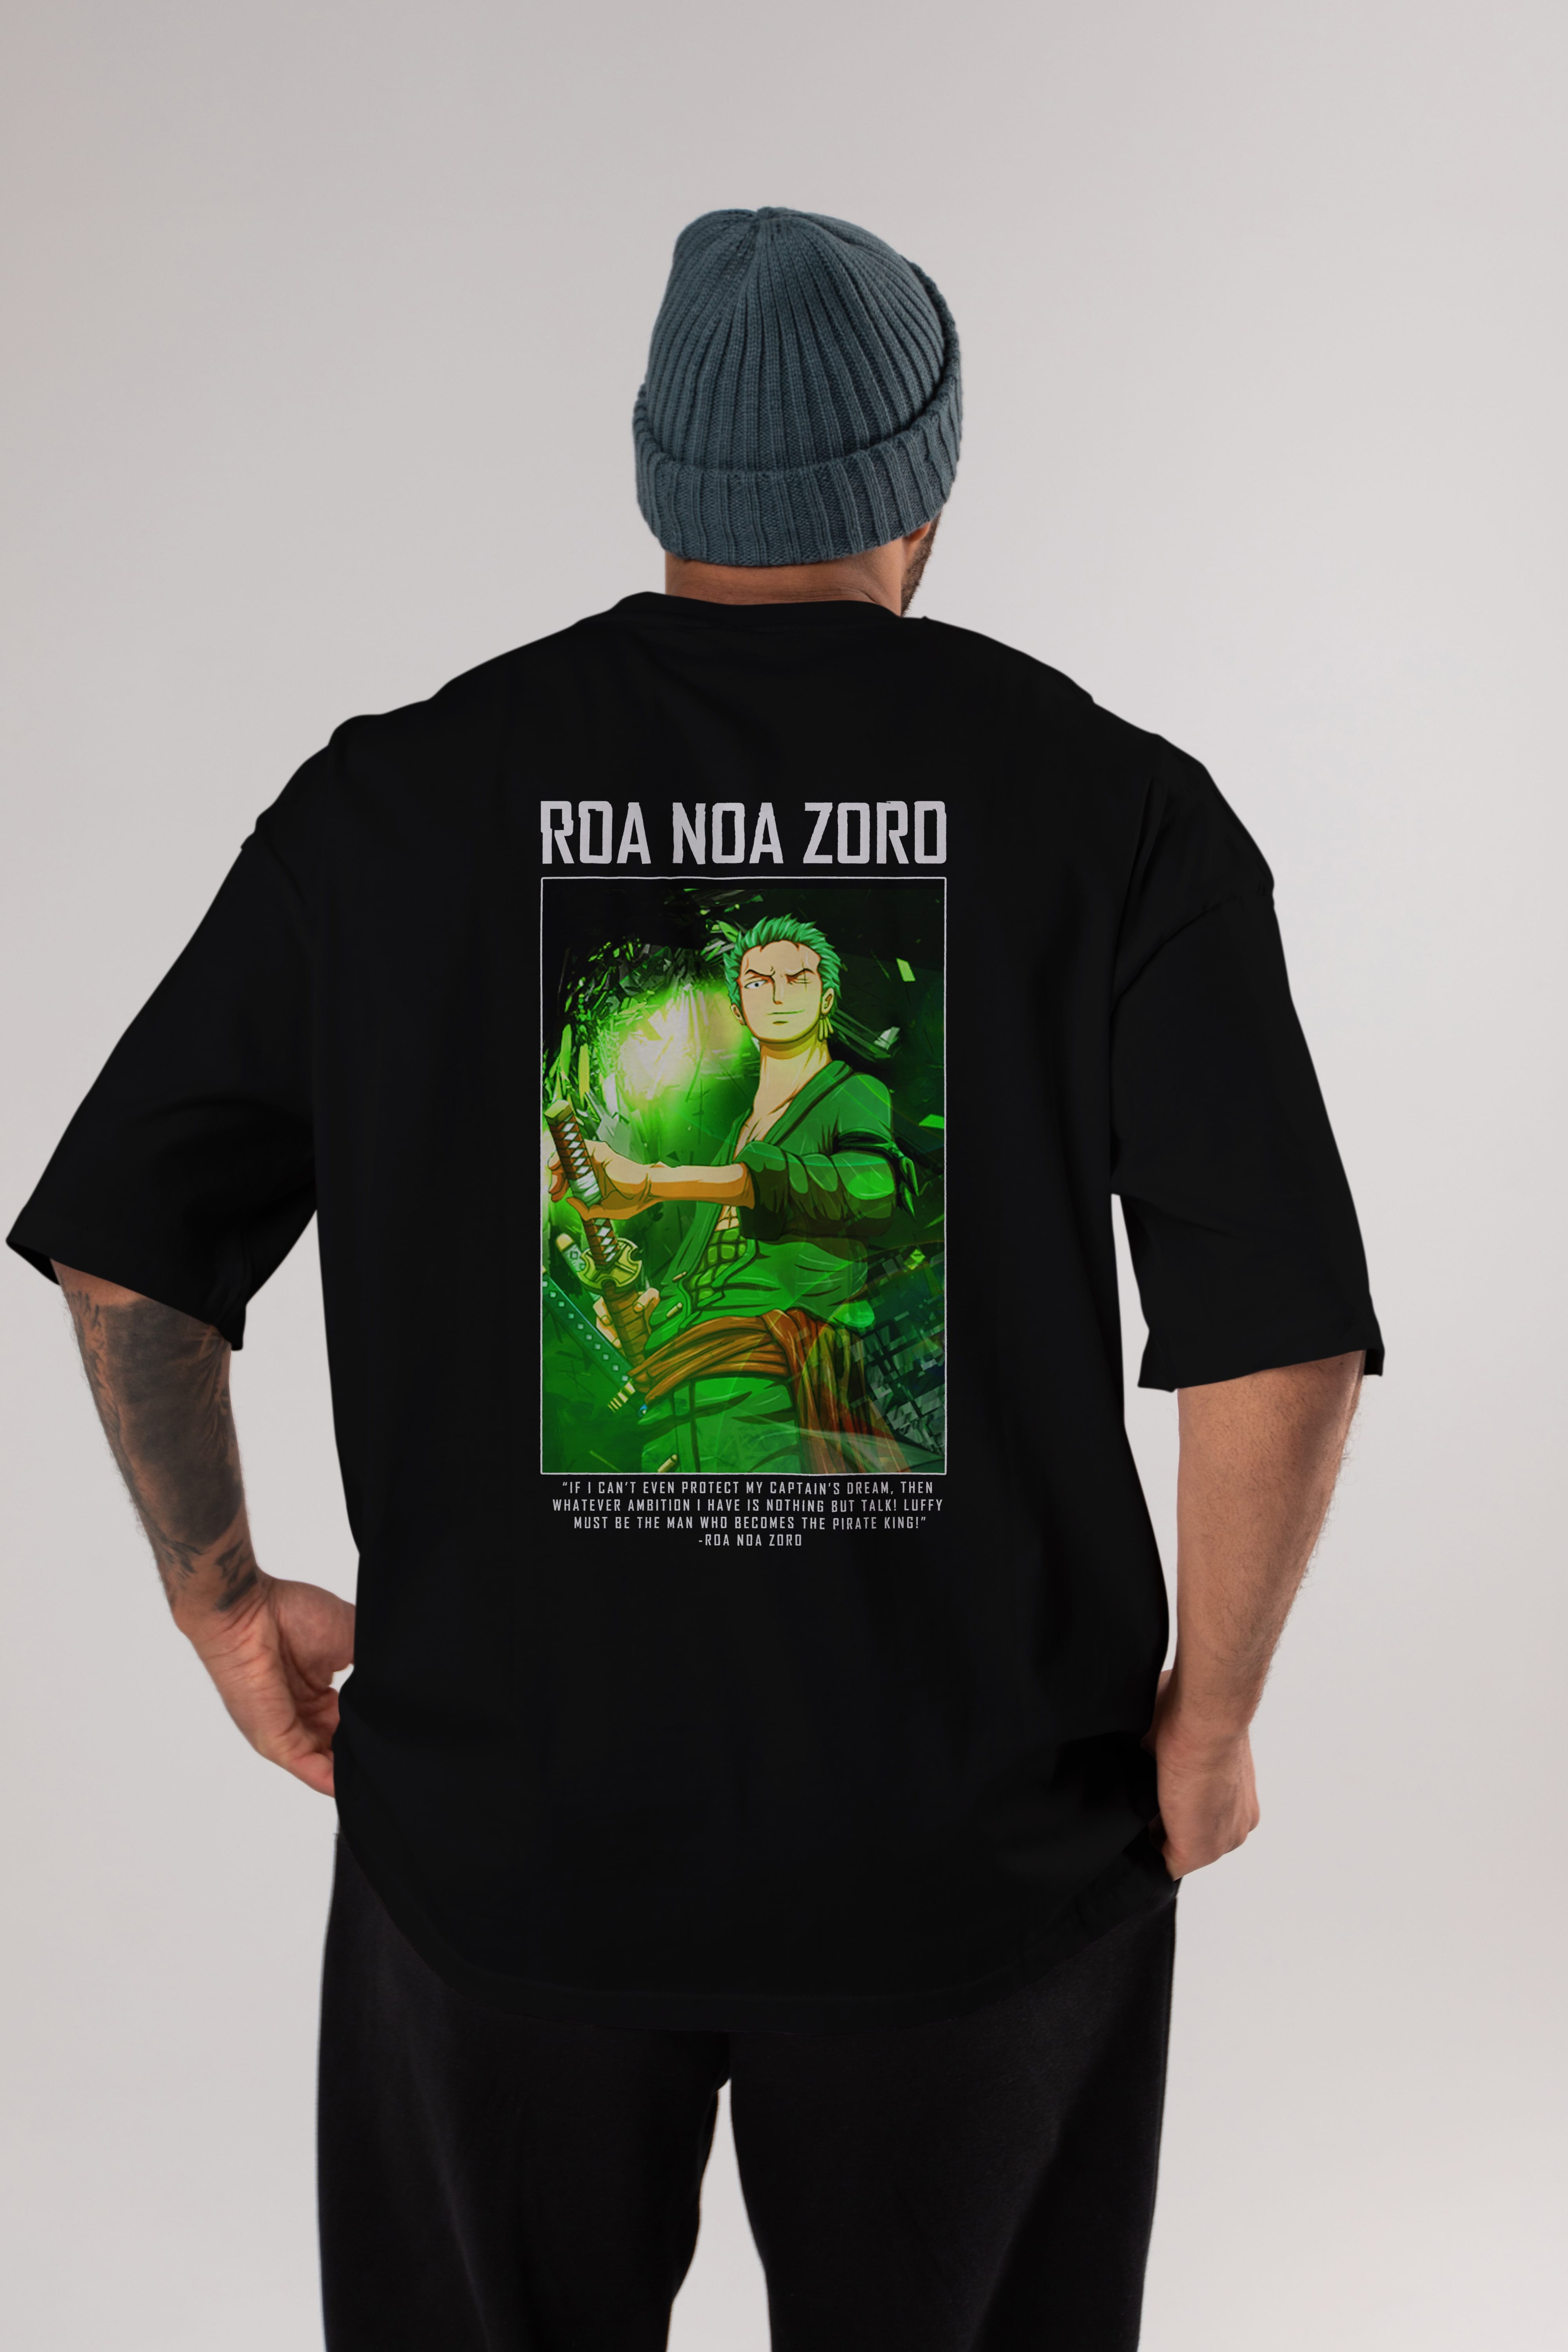 Roronoa Zoro 5 Anime Arka Baskılı Oversize t-shirt Erkek Kadın Unisex %100 pamuk tişort